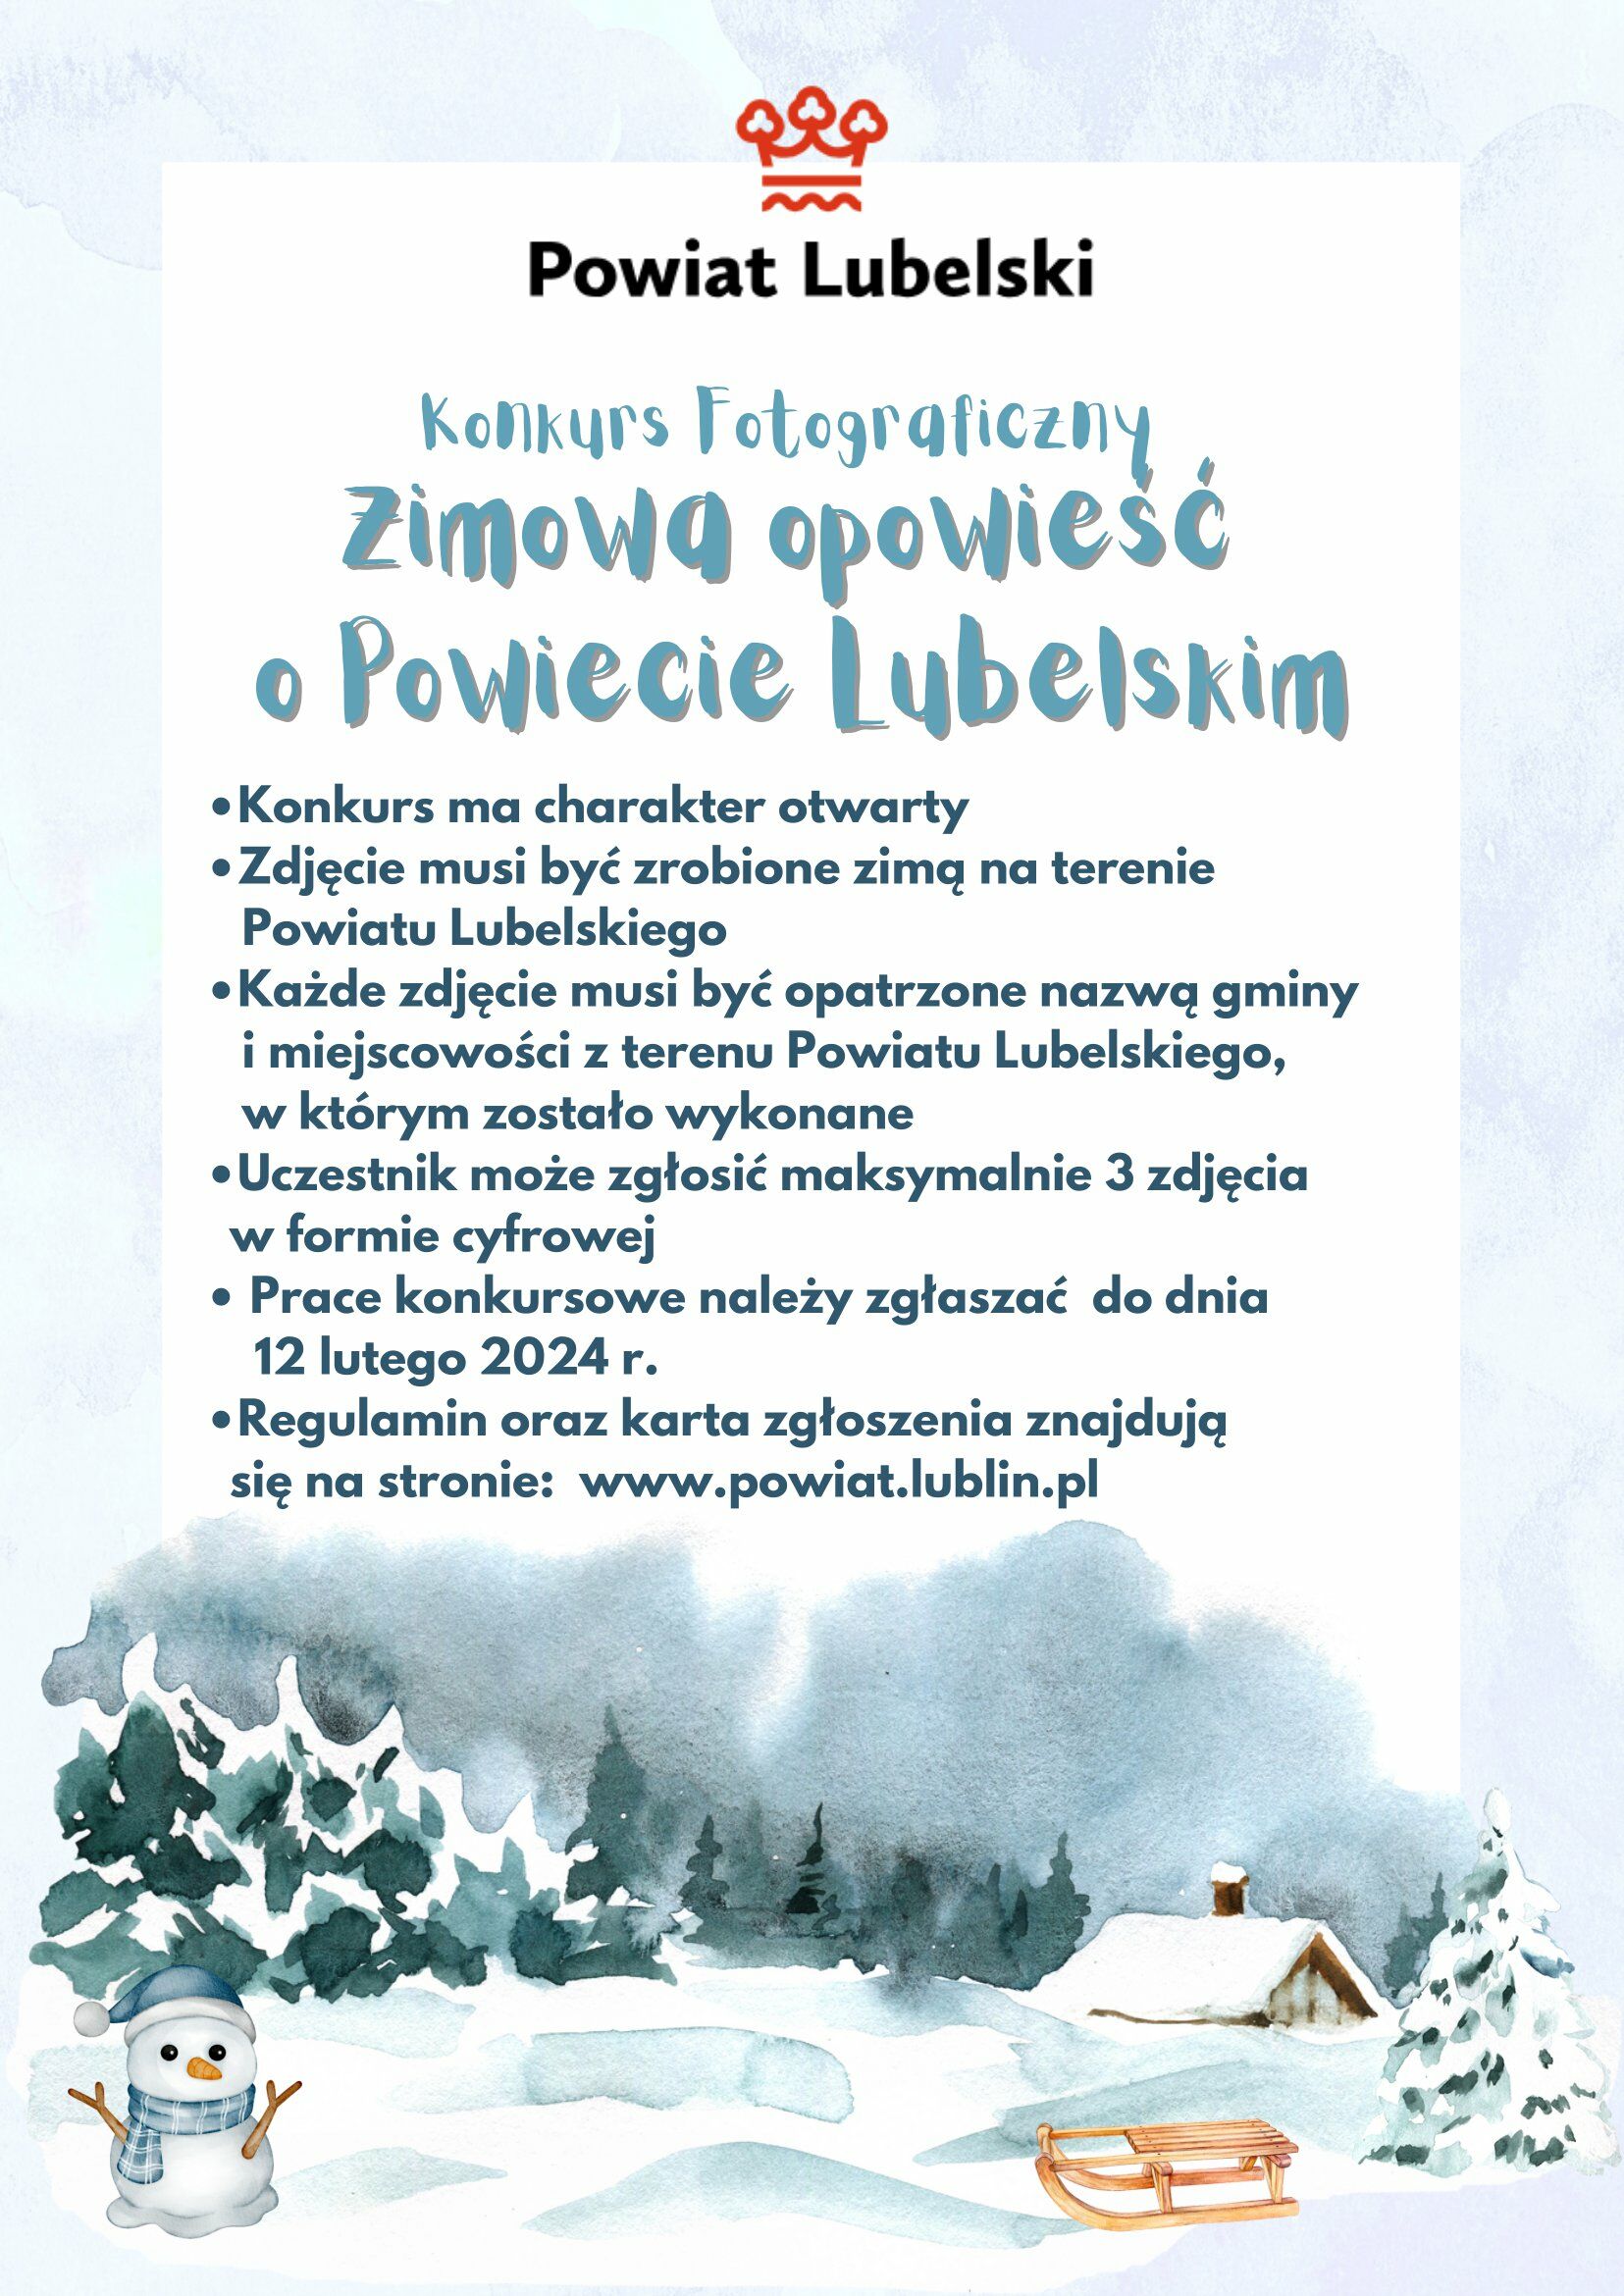 Plakat wydarzenia zimowego, z tekstami i ilustracjami, takimi jak śnieżynki, drzewa i bałwan, zawierającymi informacje o konkursie fotograficznym, wymagania i stronę internetową.